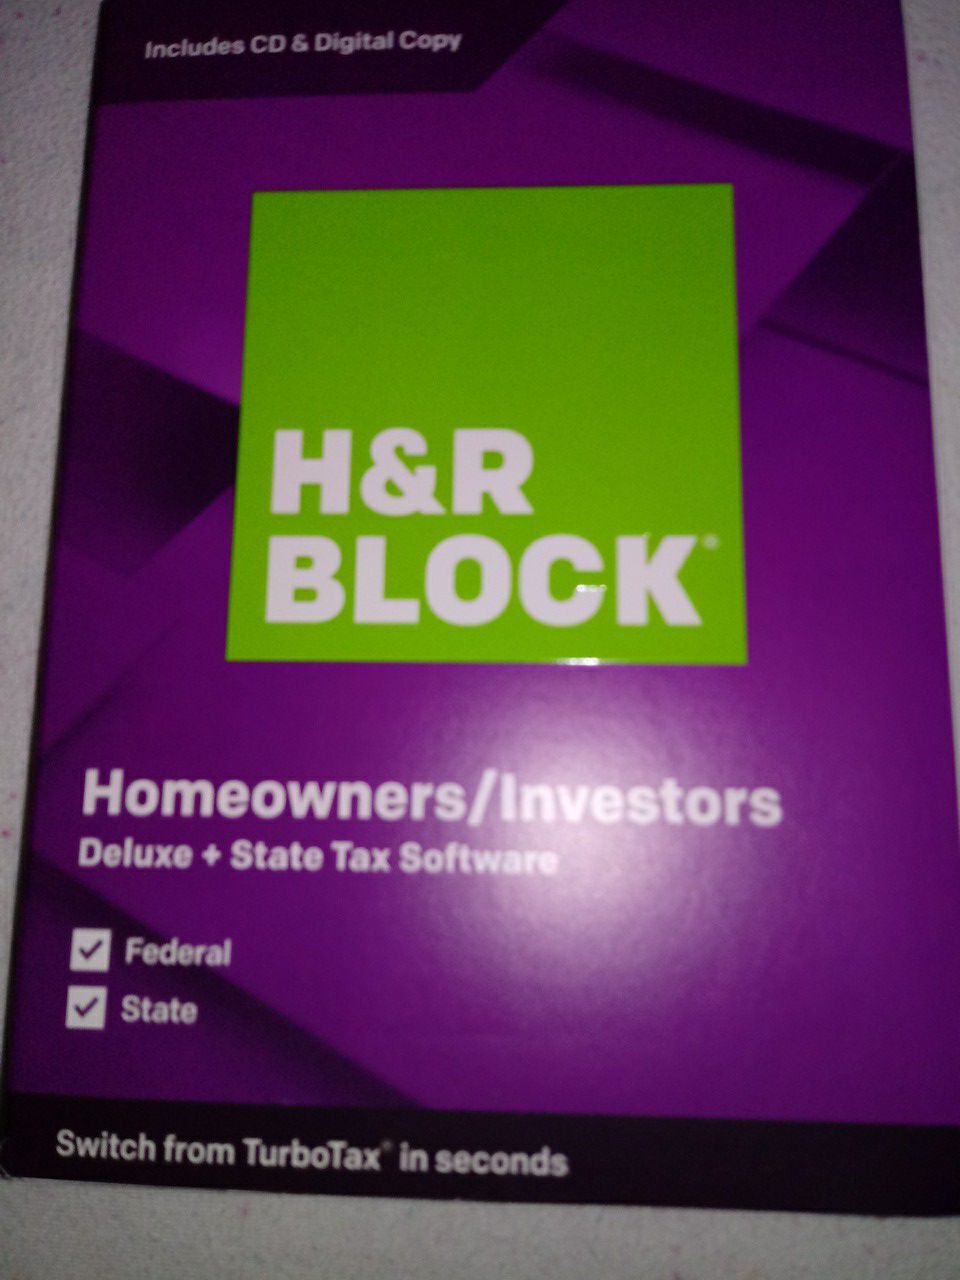 H&R BLOCK Homeowners / Investors